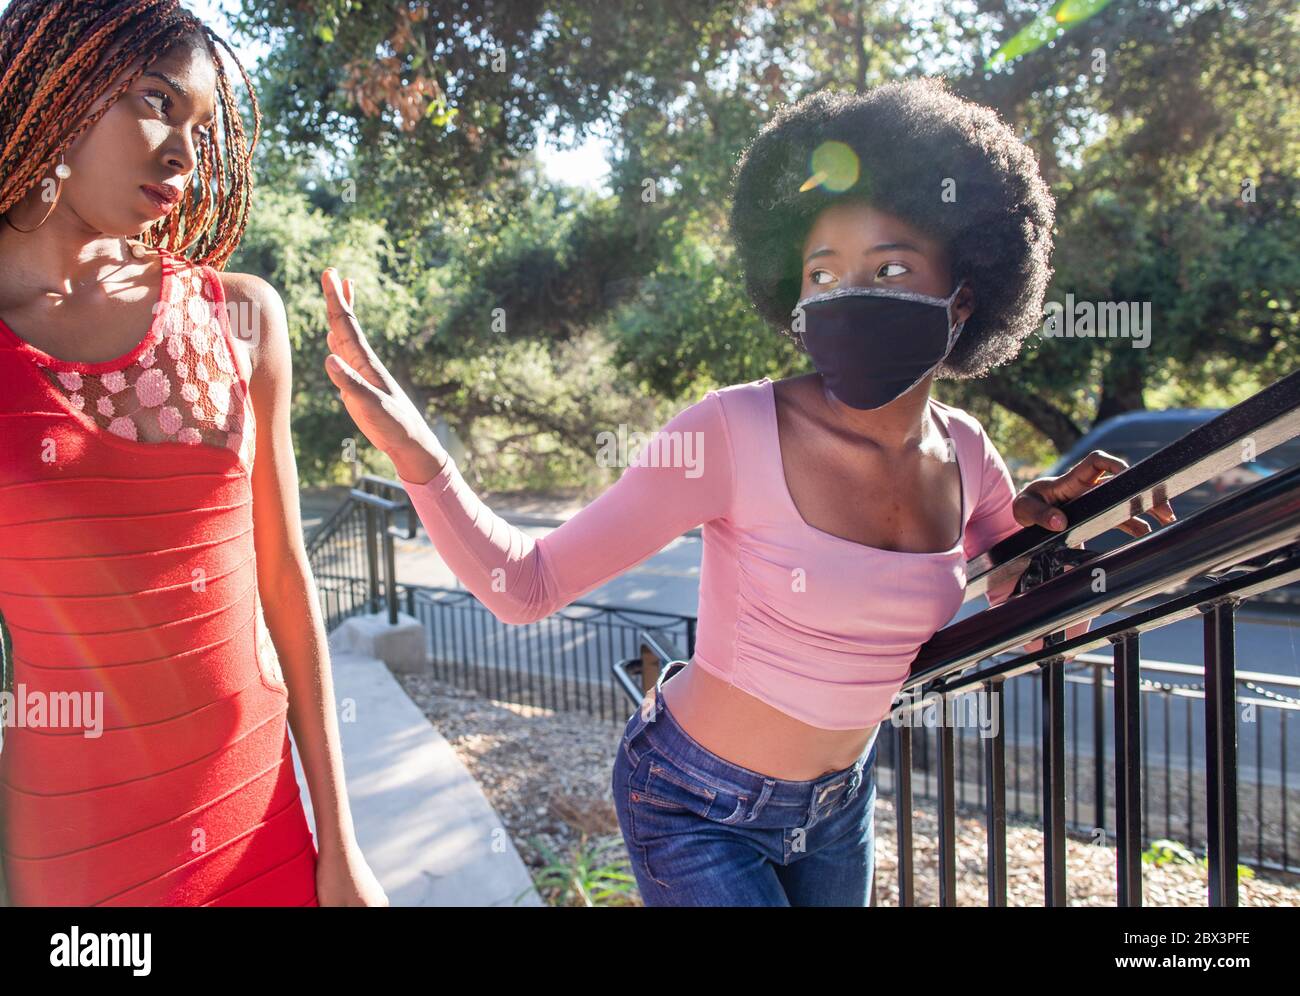 Une fille portant un masque de visage essaie de rester loin d'une personne sans masque dans la rue. Les masques sont obligatoires dans de nombreux pays en raison de la COVID-19 Banque D'Images